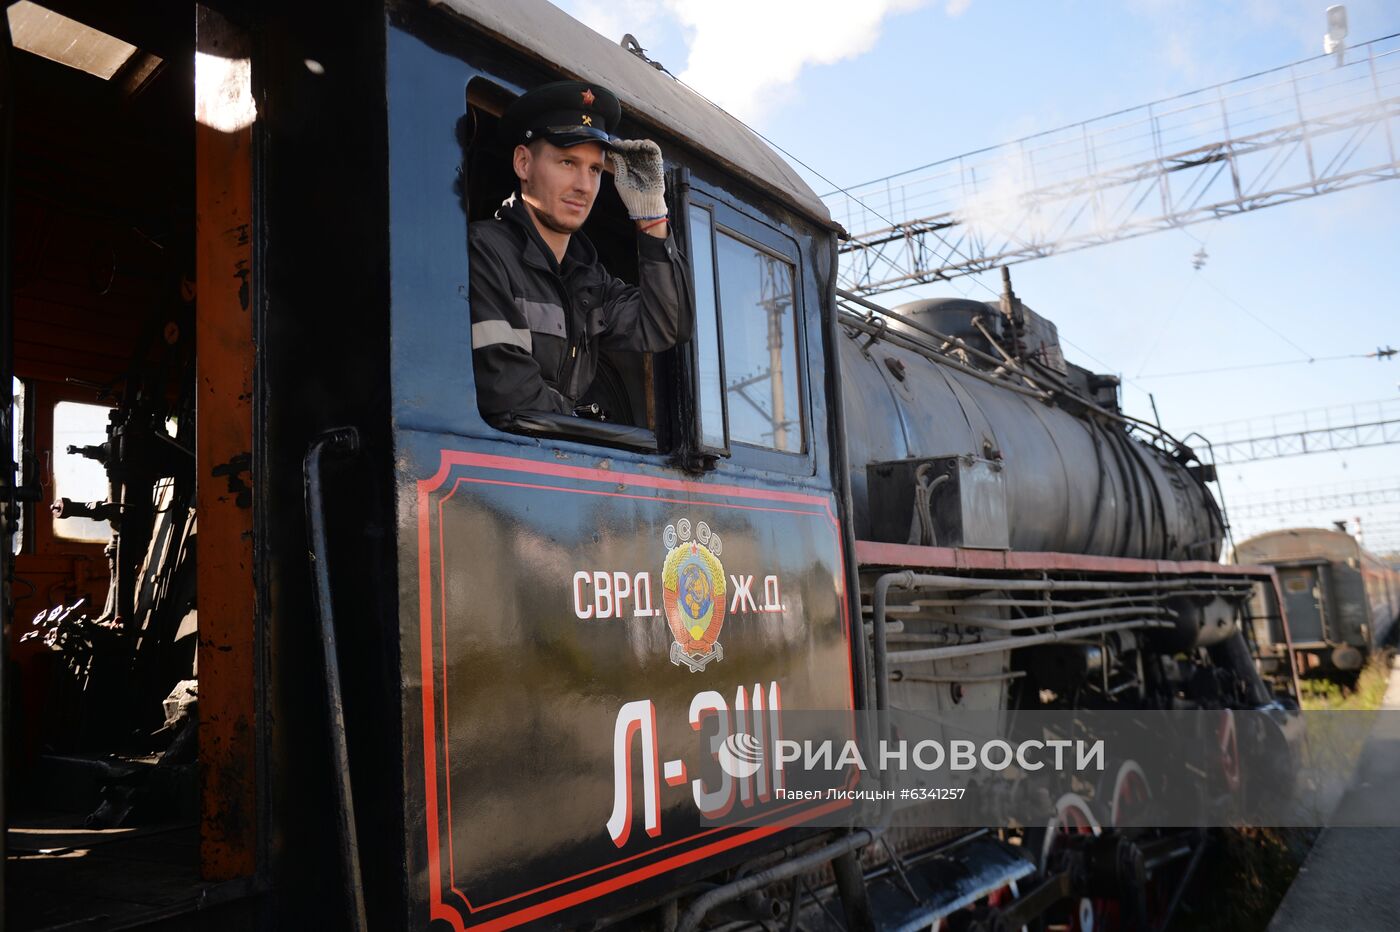 Подготовка ретро-паровоза к запуску по туристическому маршруту в Свердловской области